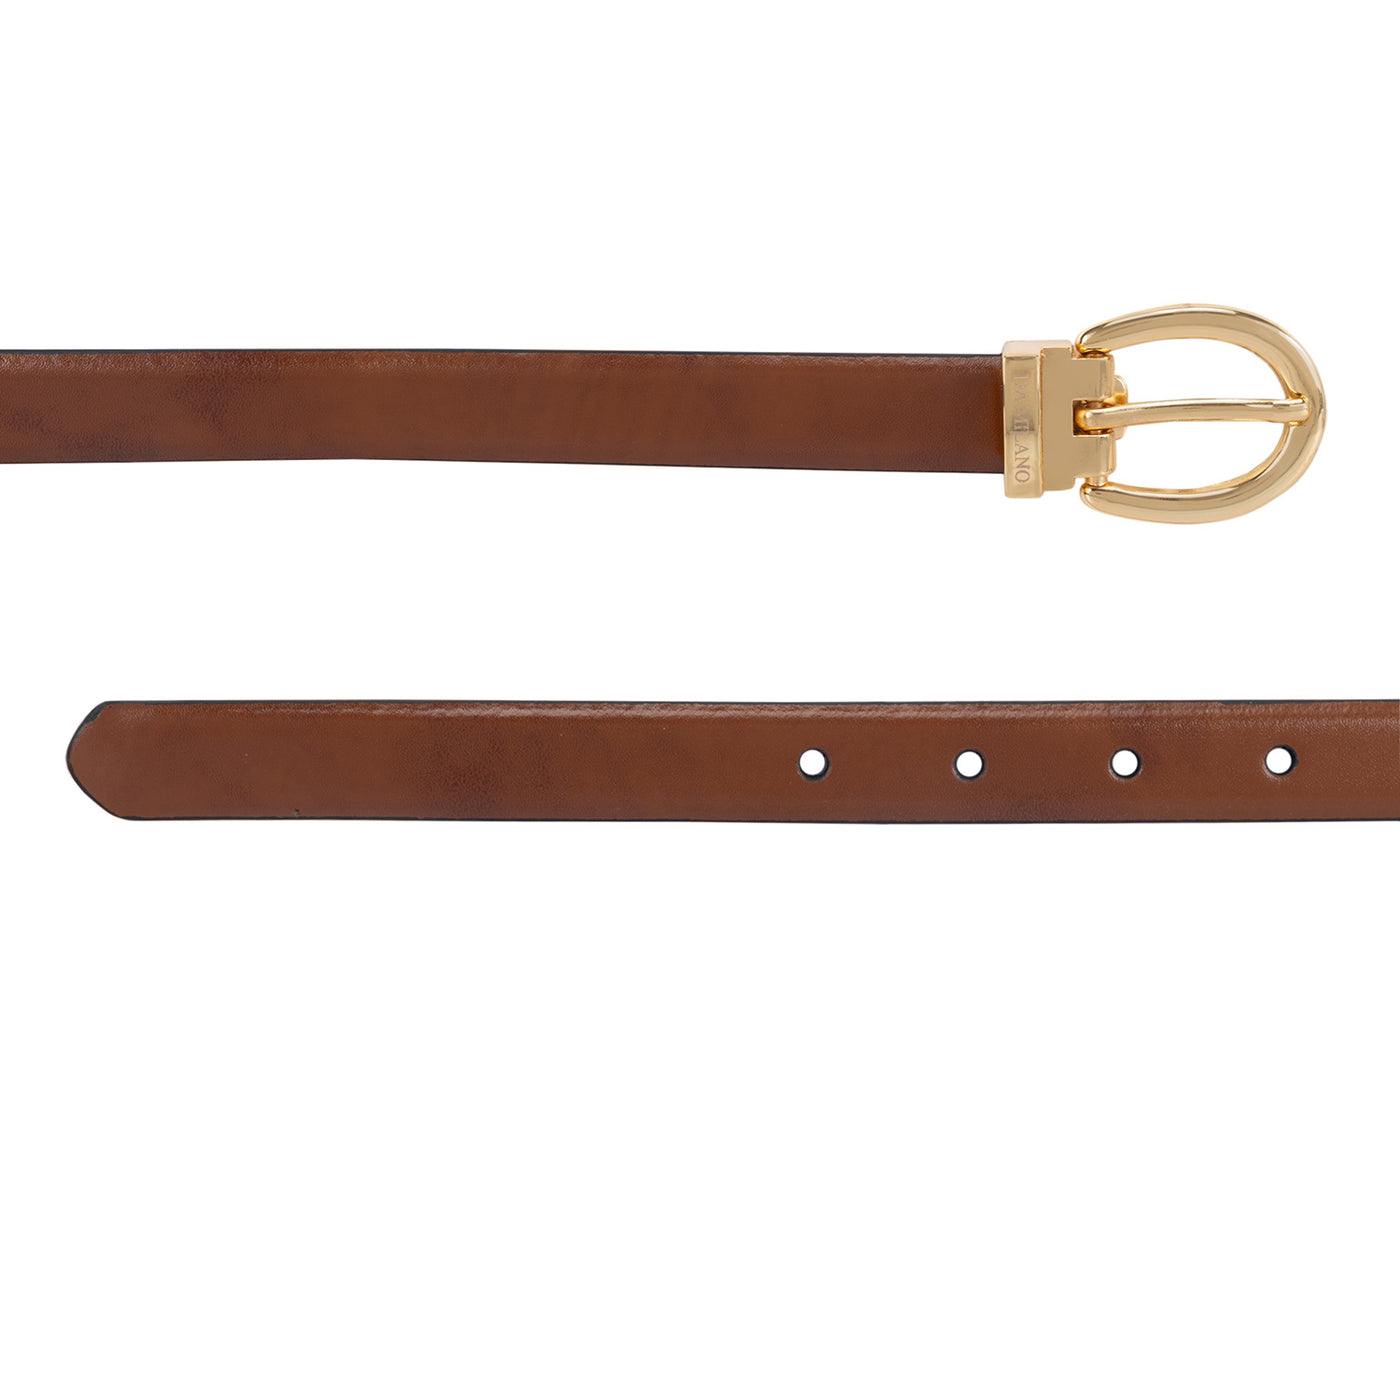 Formal Plain Leather Ladies Belt - Cognac